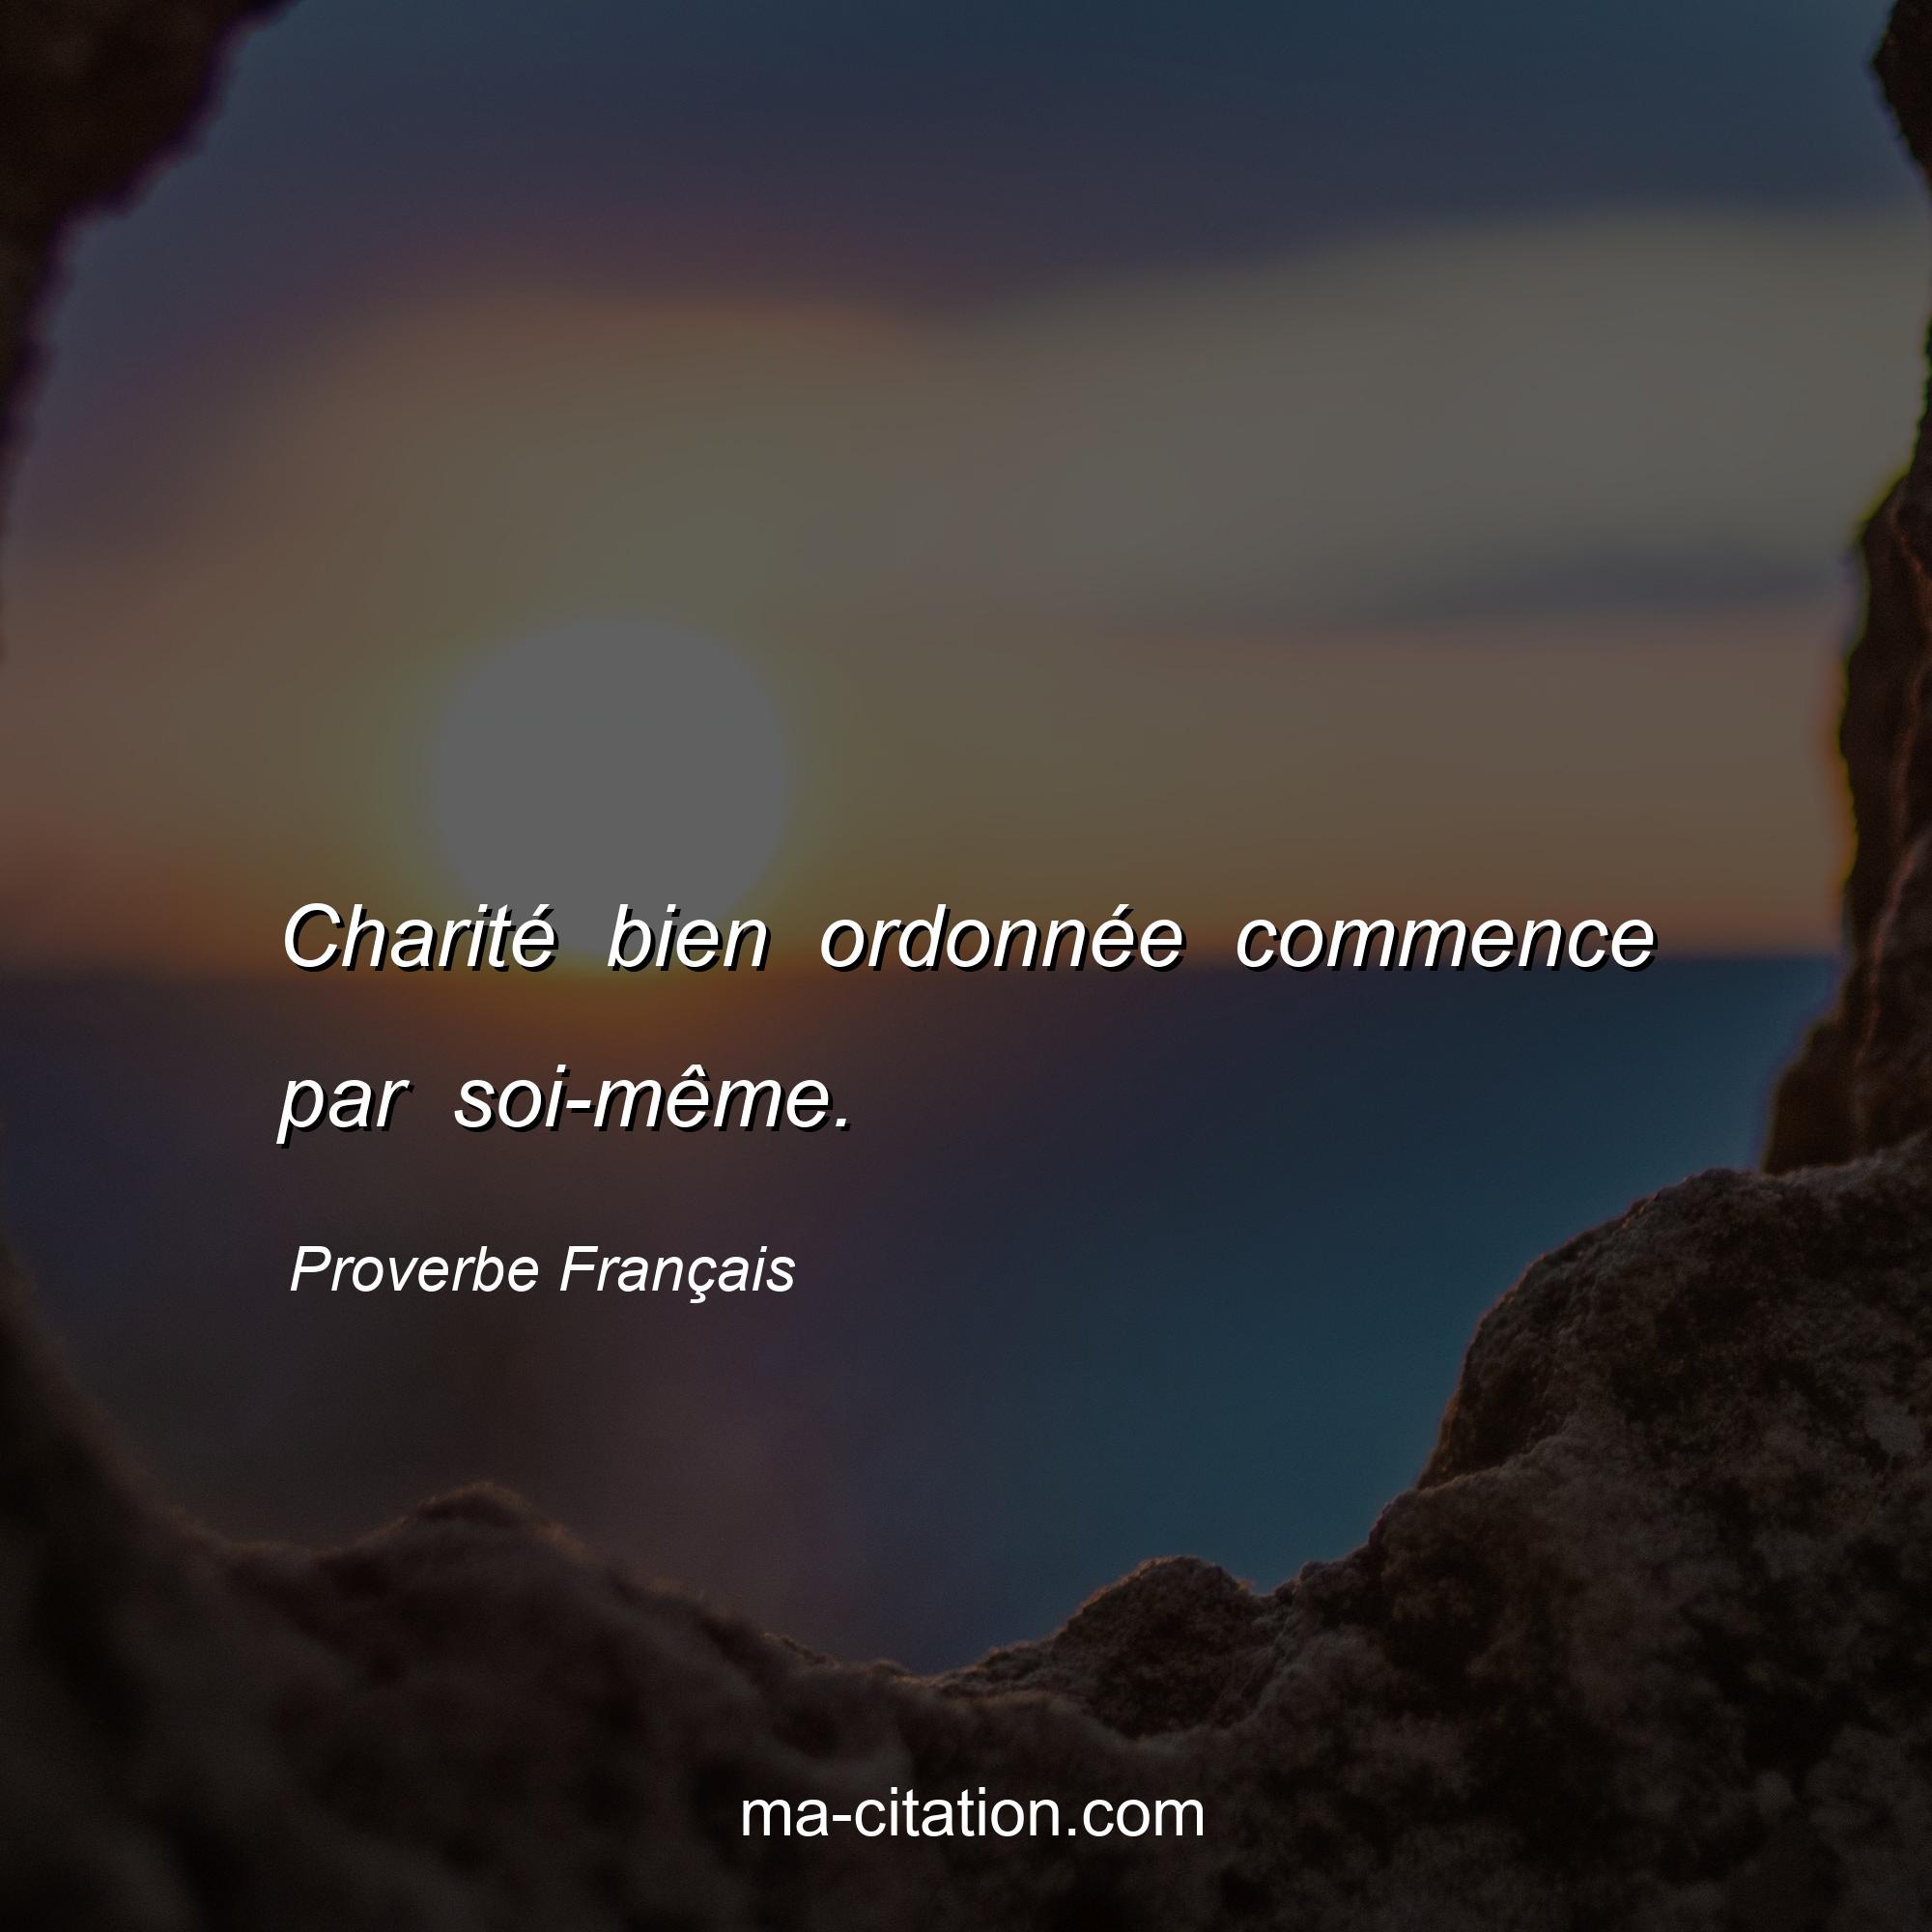 Proverbe Français : Charité bien ordonnée commence par soi-même.